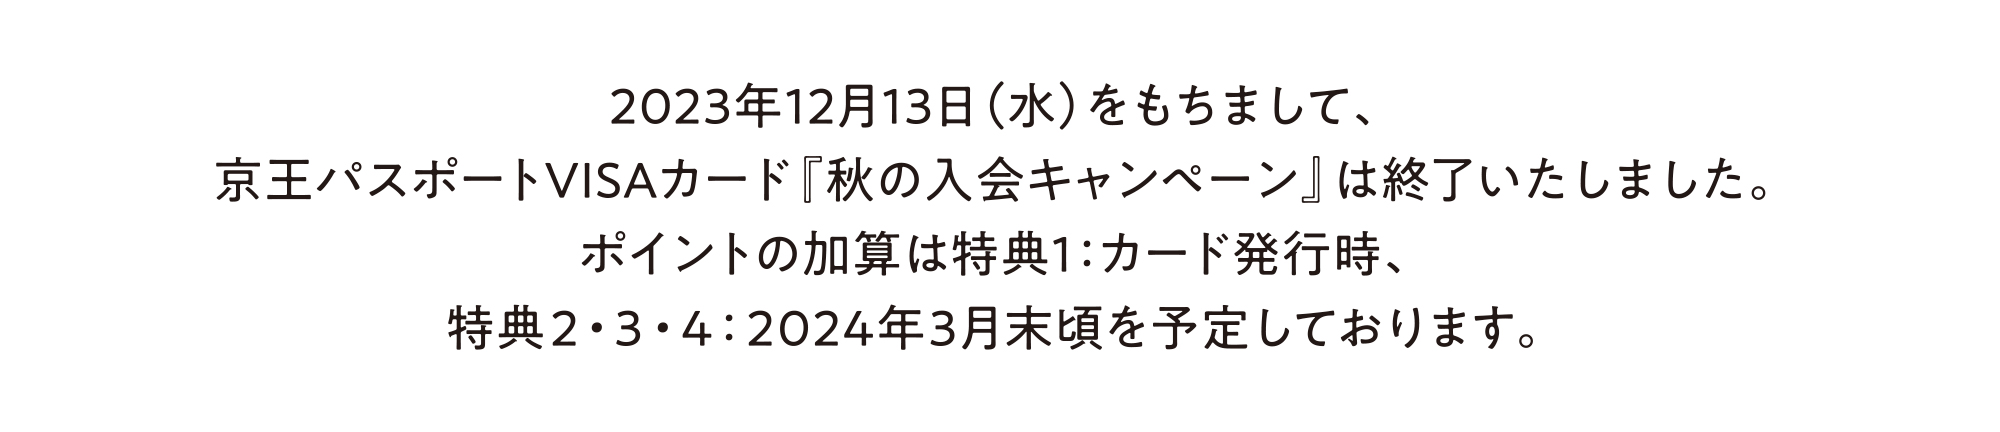 2023年12月13日（水）をもちまして、京王パスポートVISAカード『秋の入会キャンペーン』は終了いたしました。ポイントの加算は特典1：カード発行時、特典2・3・4：2024年3月末頃を予定しております。